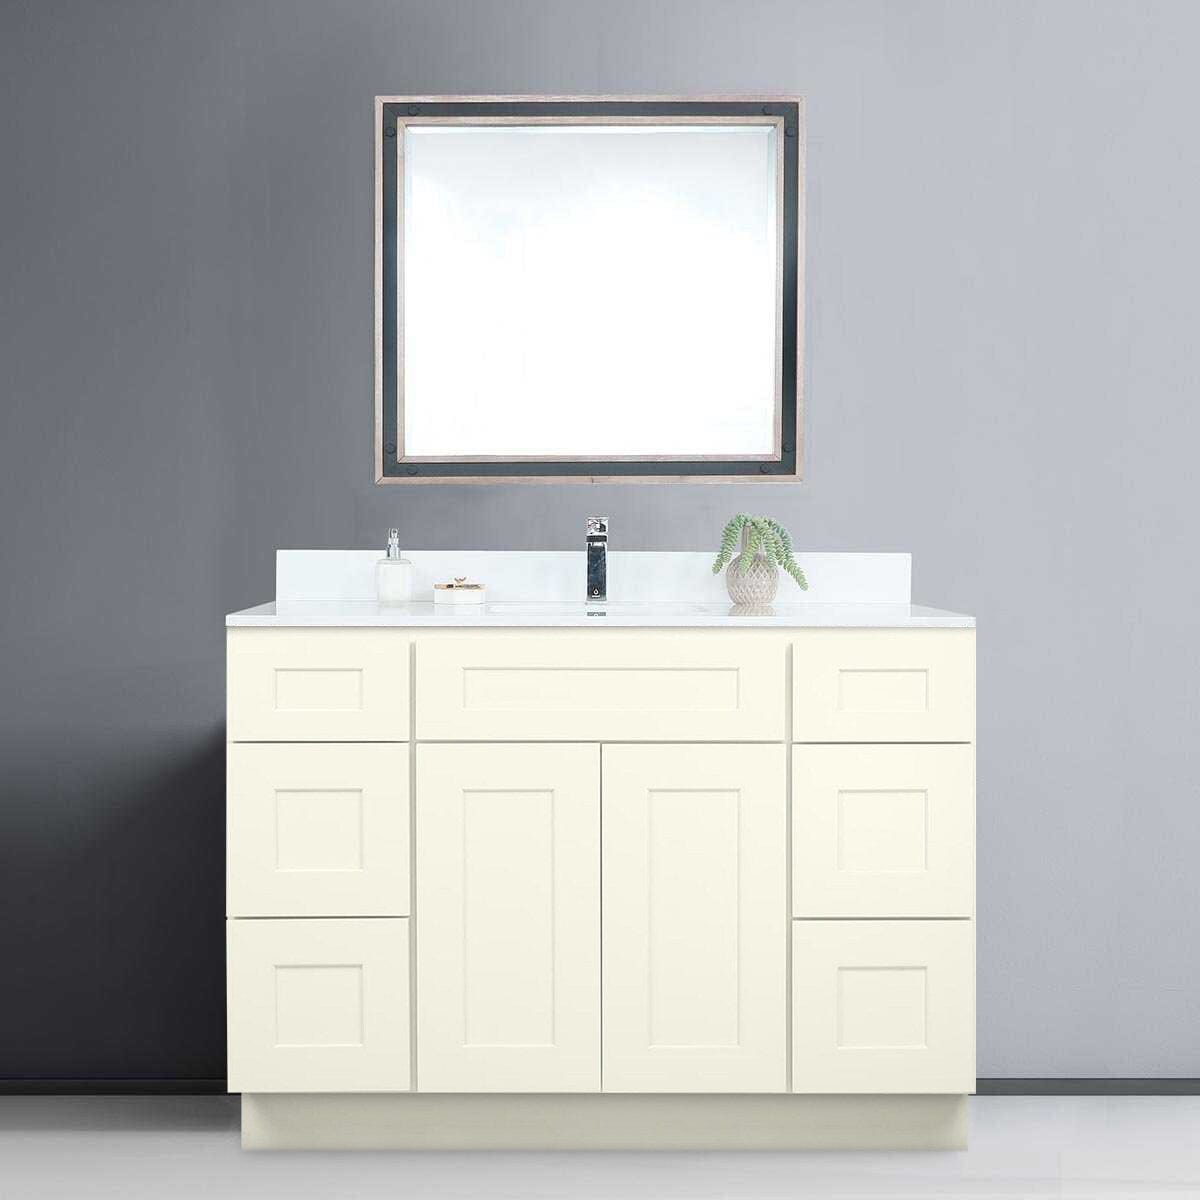 Riley & Higgs Bathroom Vanity 60 Inch Antique White Shaker Single Sink Bathroom Vanity with Drawers